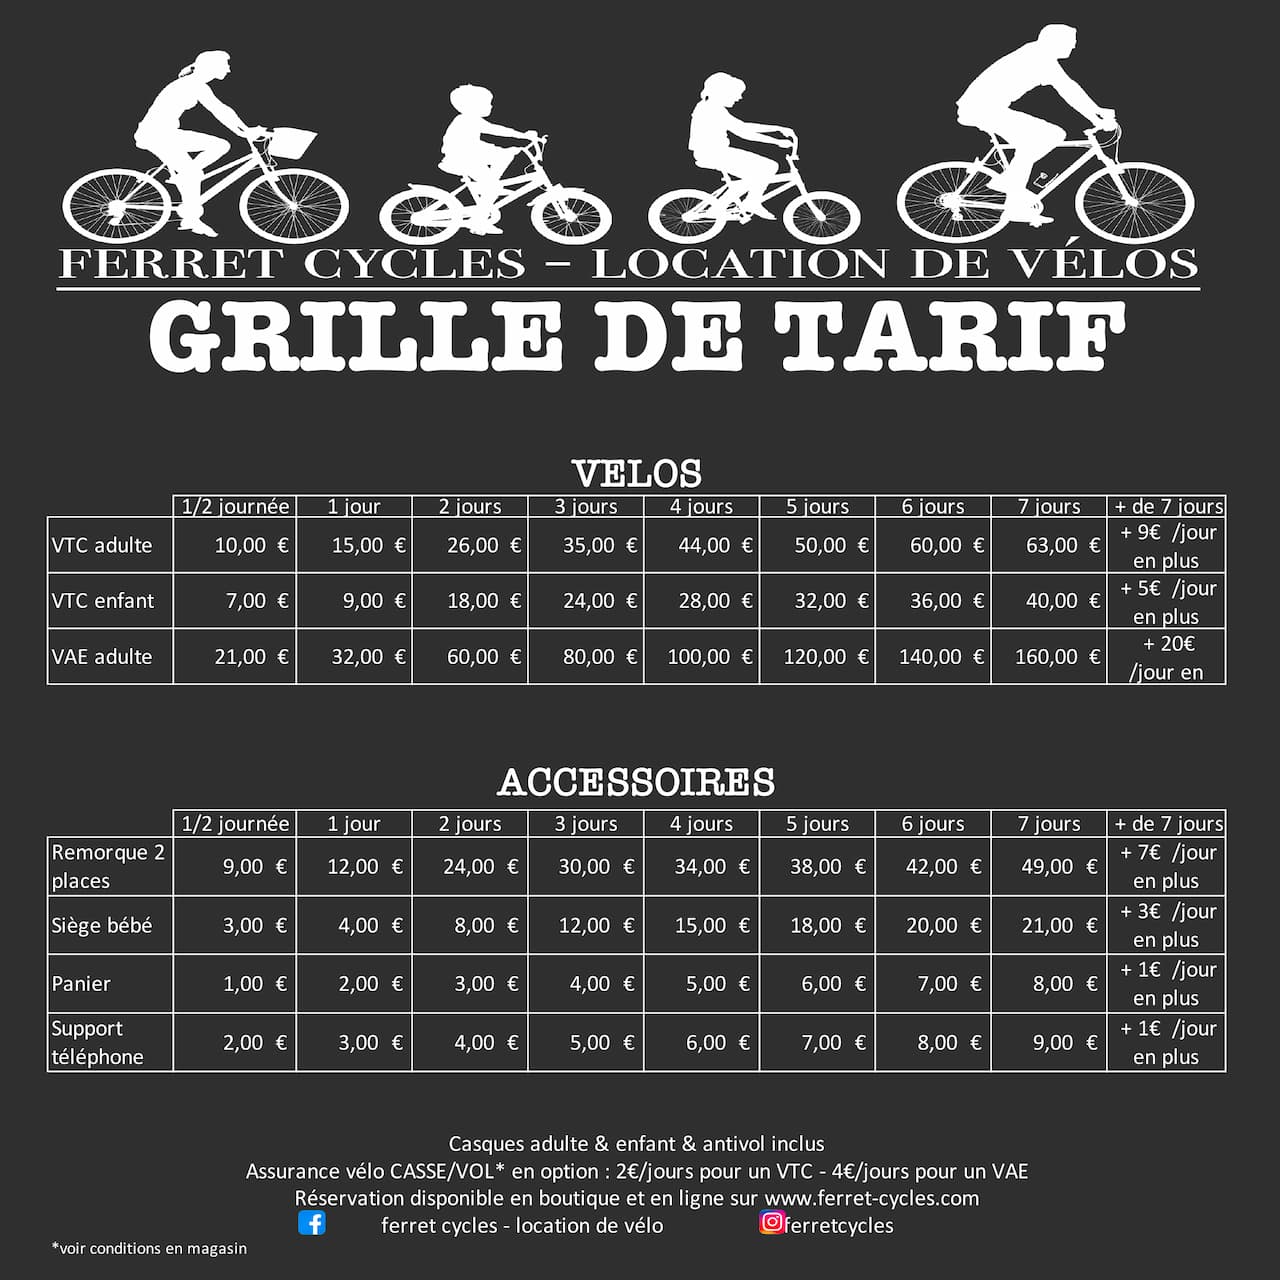 Grille des tarifs de location de vélo Ferret Cycles à La Vigne